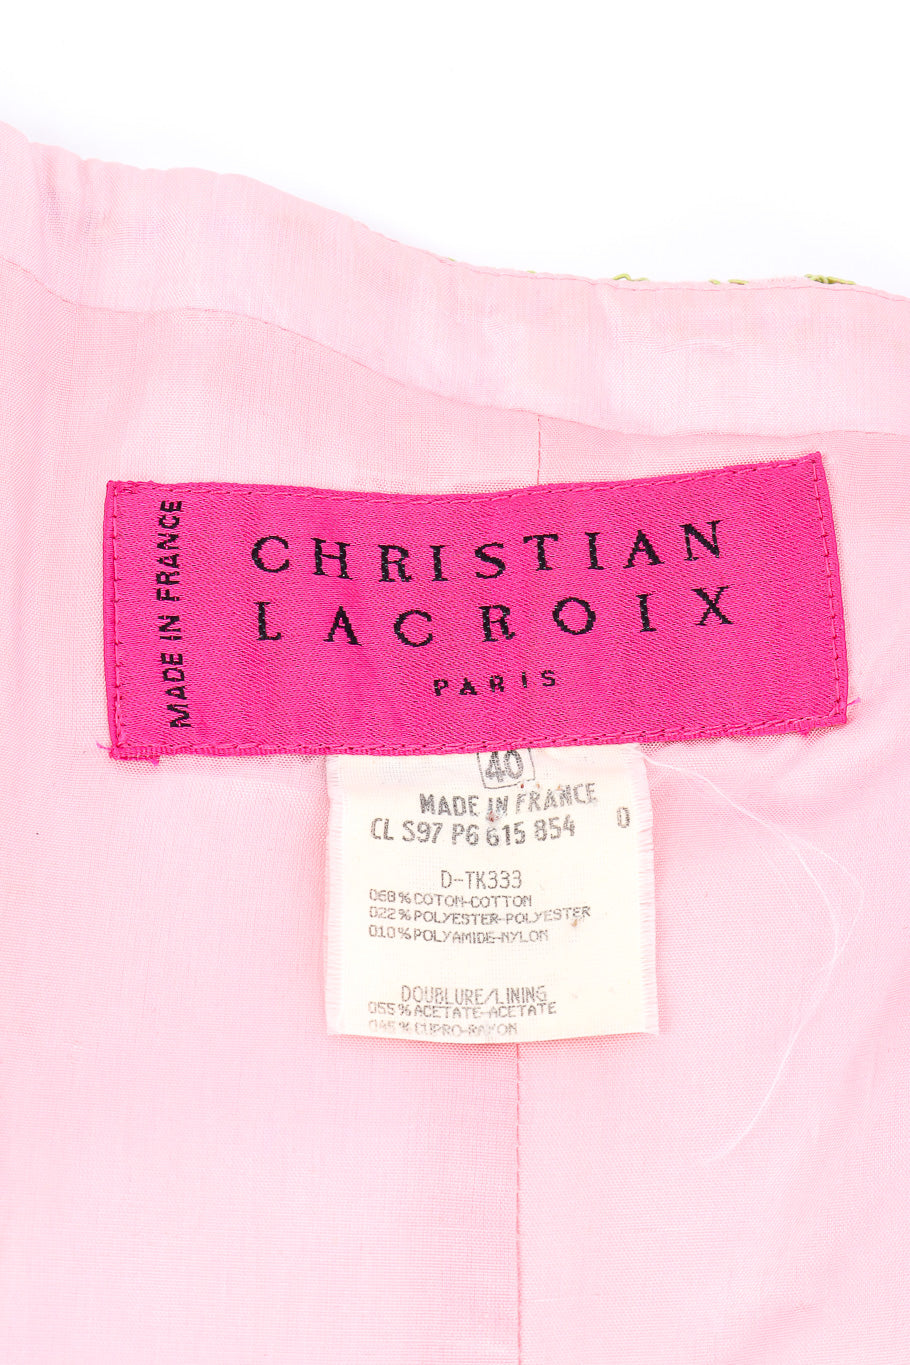 Vintage Christian Lacroix Lace Bustier Corset label closeup @Recessla